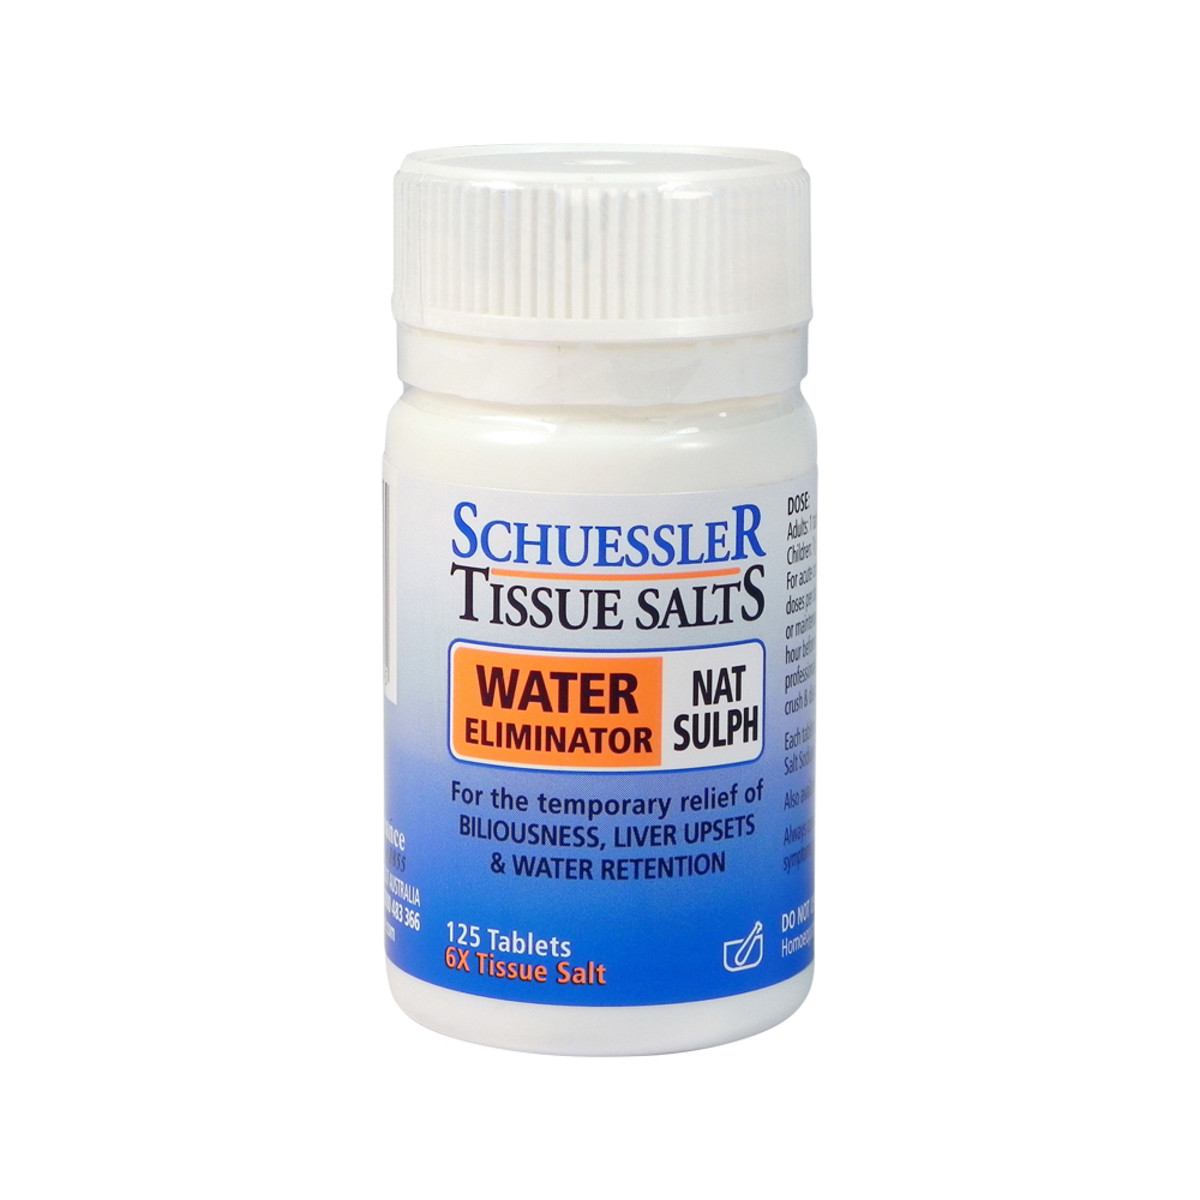 Schuessler Tissue Salts Nat Sulph (Water Eliminator) 125t